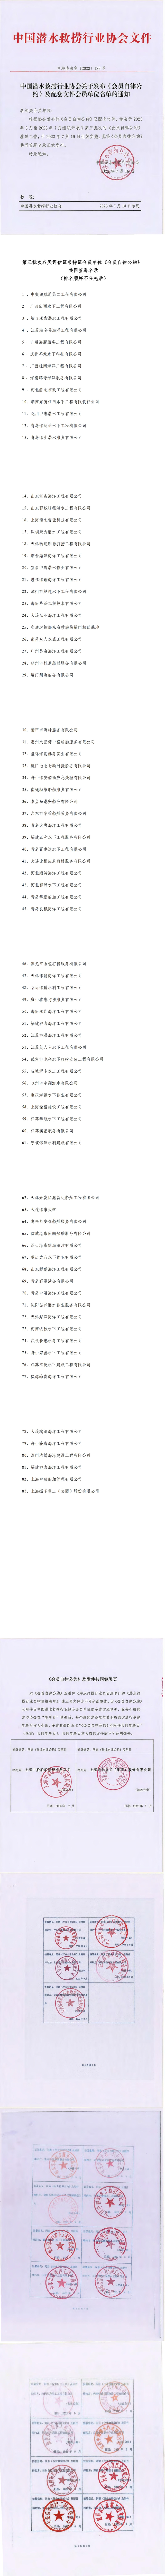 中国潜水救捞行业协会关于发布《会员自律公约》及配套文件会员单位名单的通知_00.jpg